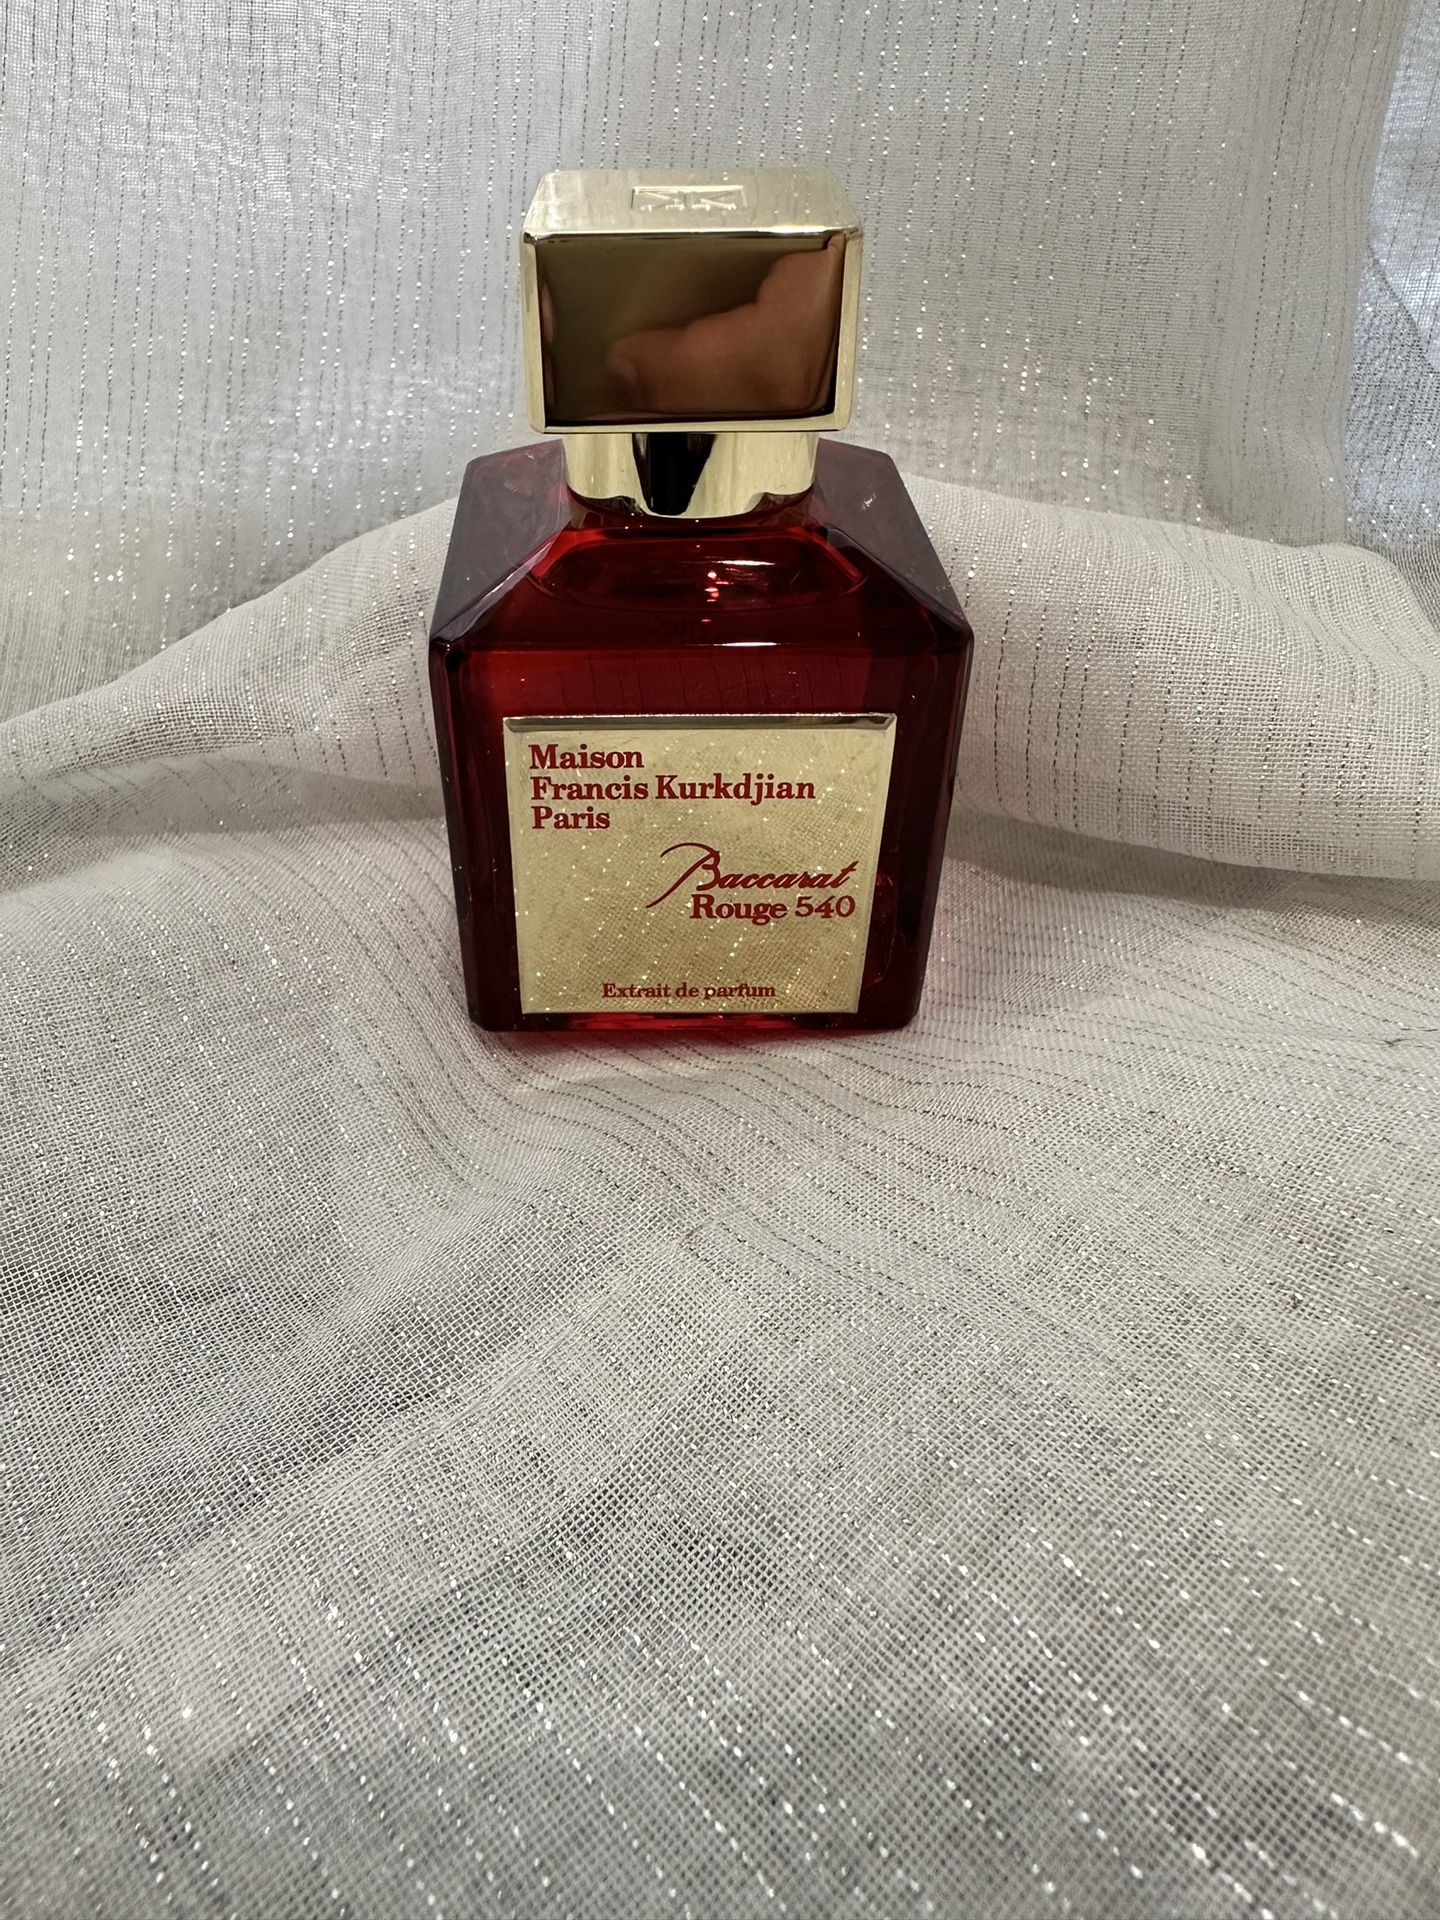 Madison Frances Baccarat Rouge 540 Extrait de parfum Original Price $465